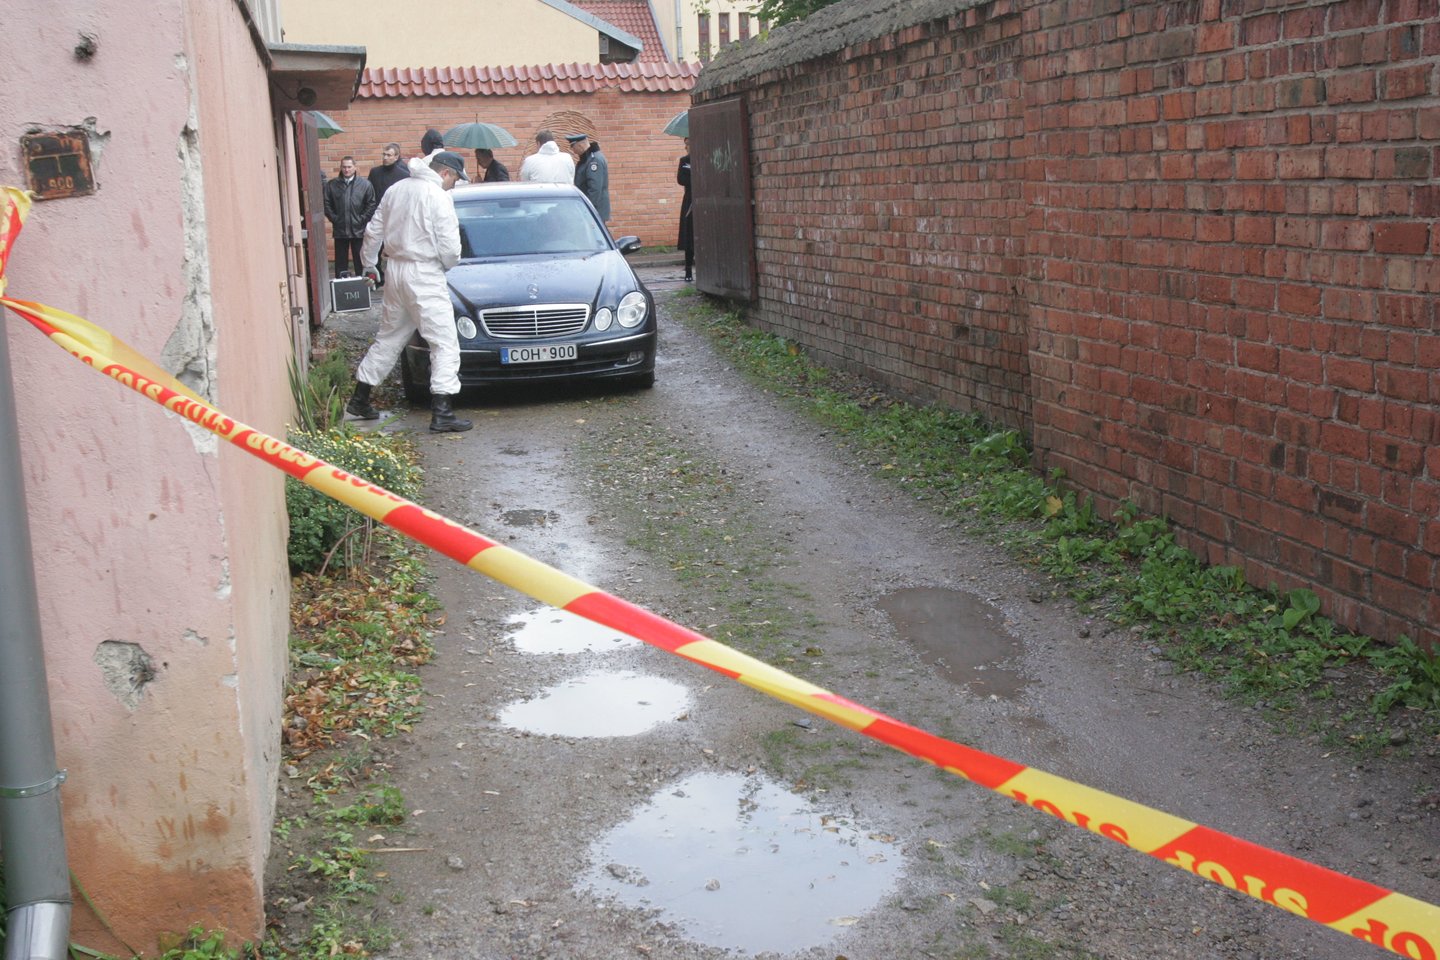  J.Furmanavičiaus nužudymas įvyko V.Sladkevičiaus gatvėje 2009-aisiais.<br> A.Bardžiaus nuotr.